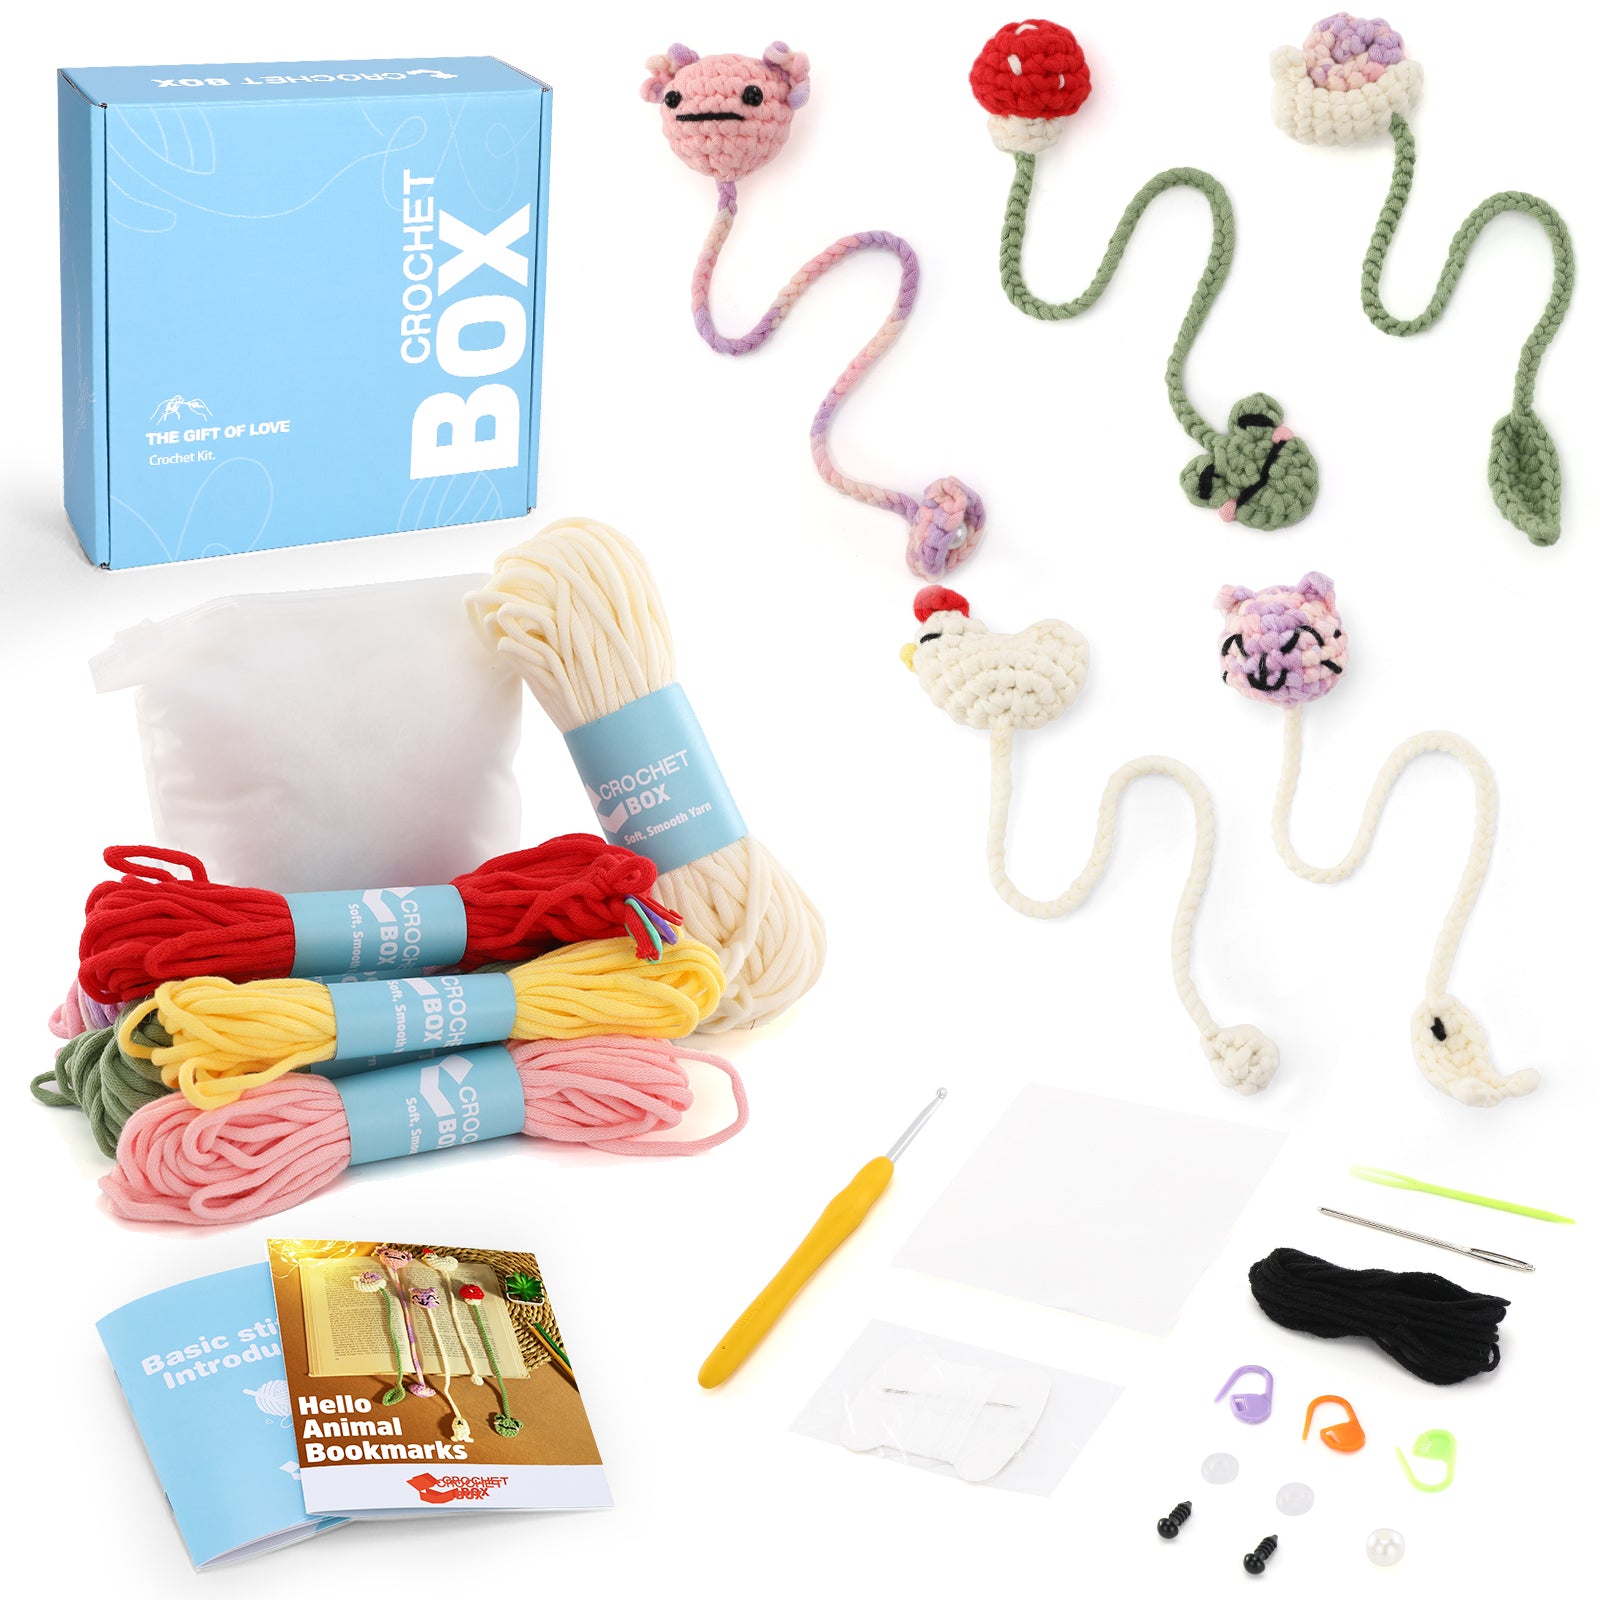 Complete Crochet Kit for Beginners —— Animal Bookmarks